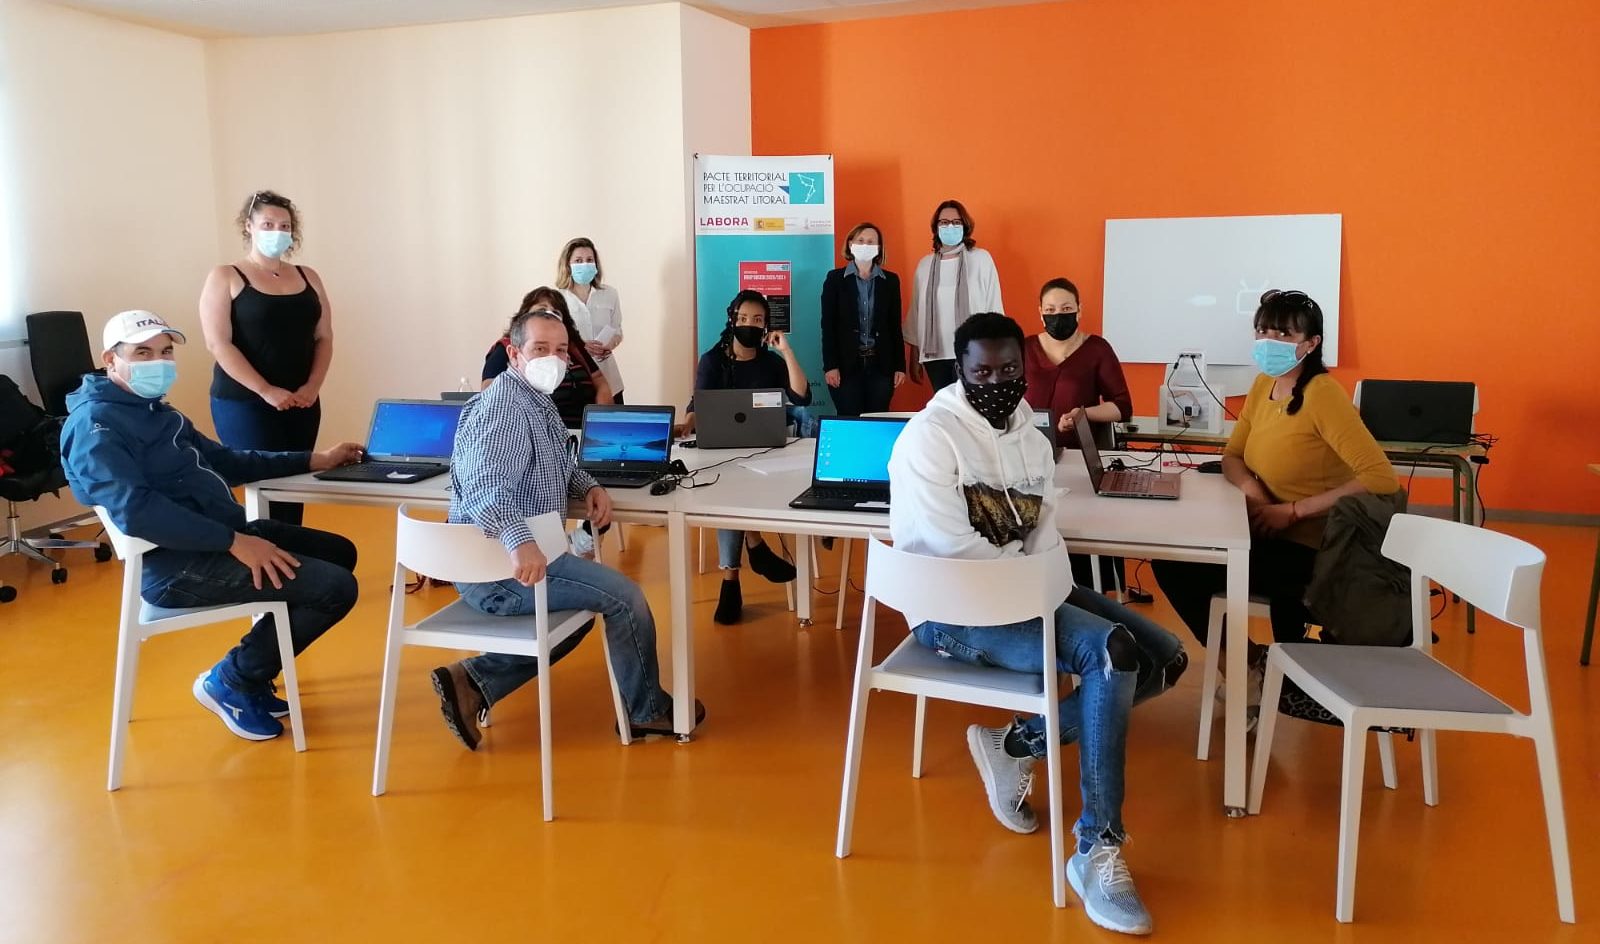 Peníscola realitza un curs d'alfabetització digital, impulsat des d’OBSEDI i Serveis Socials